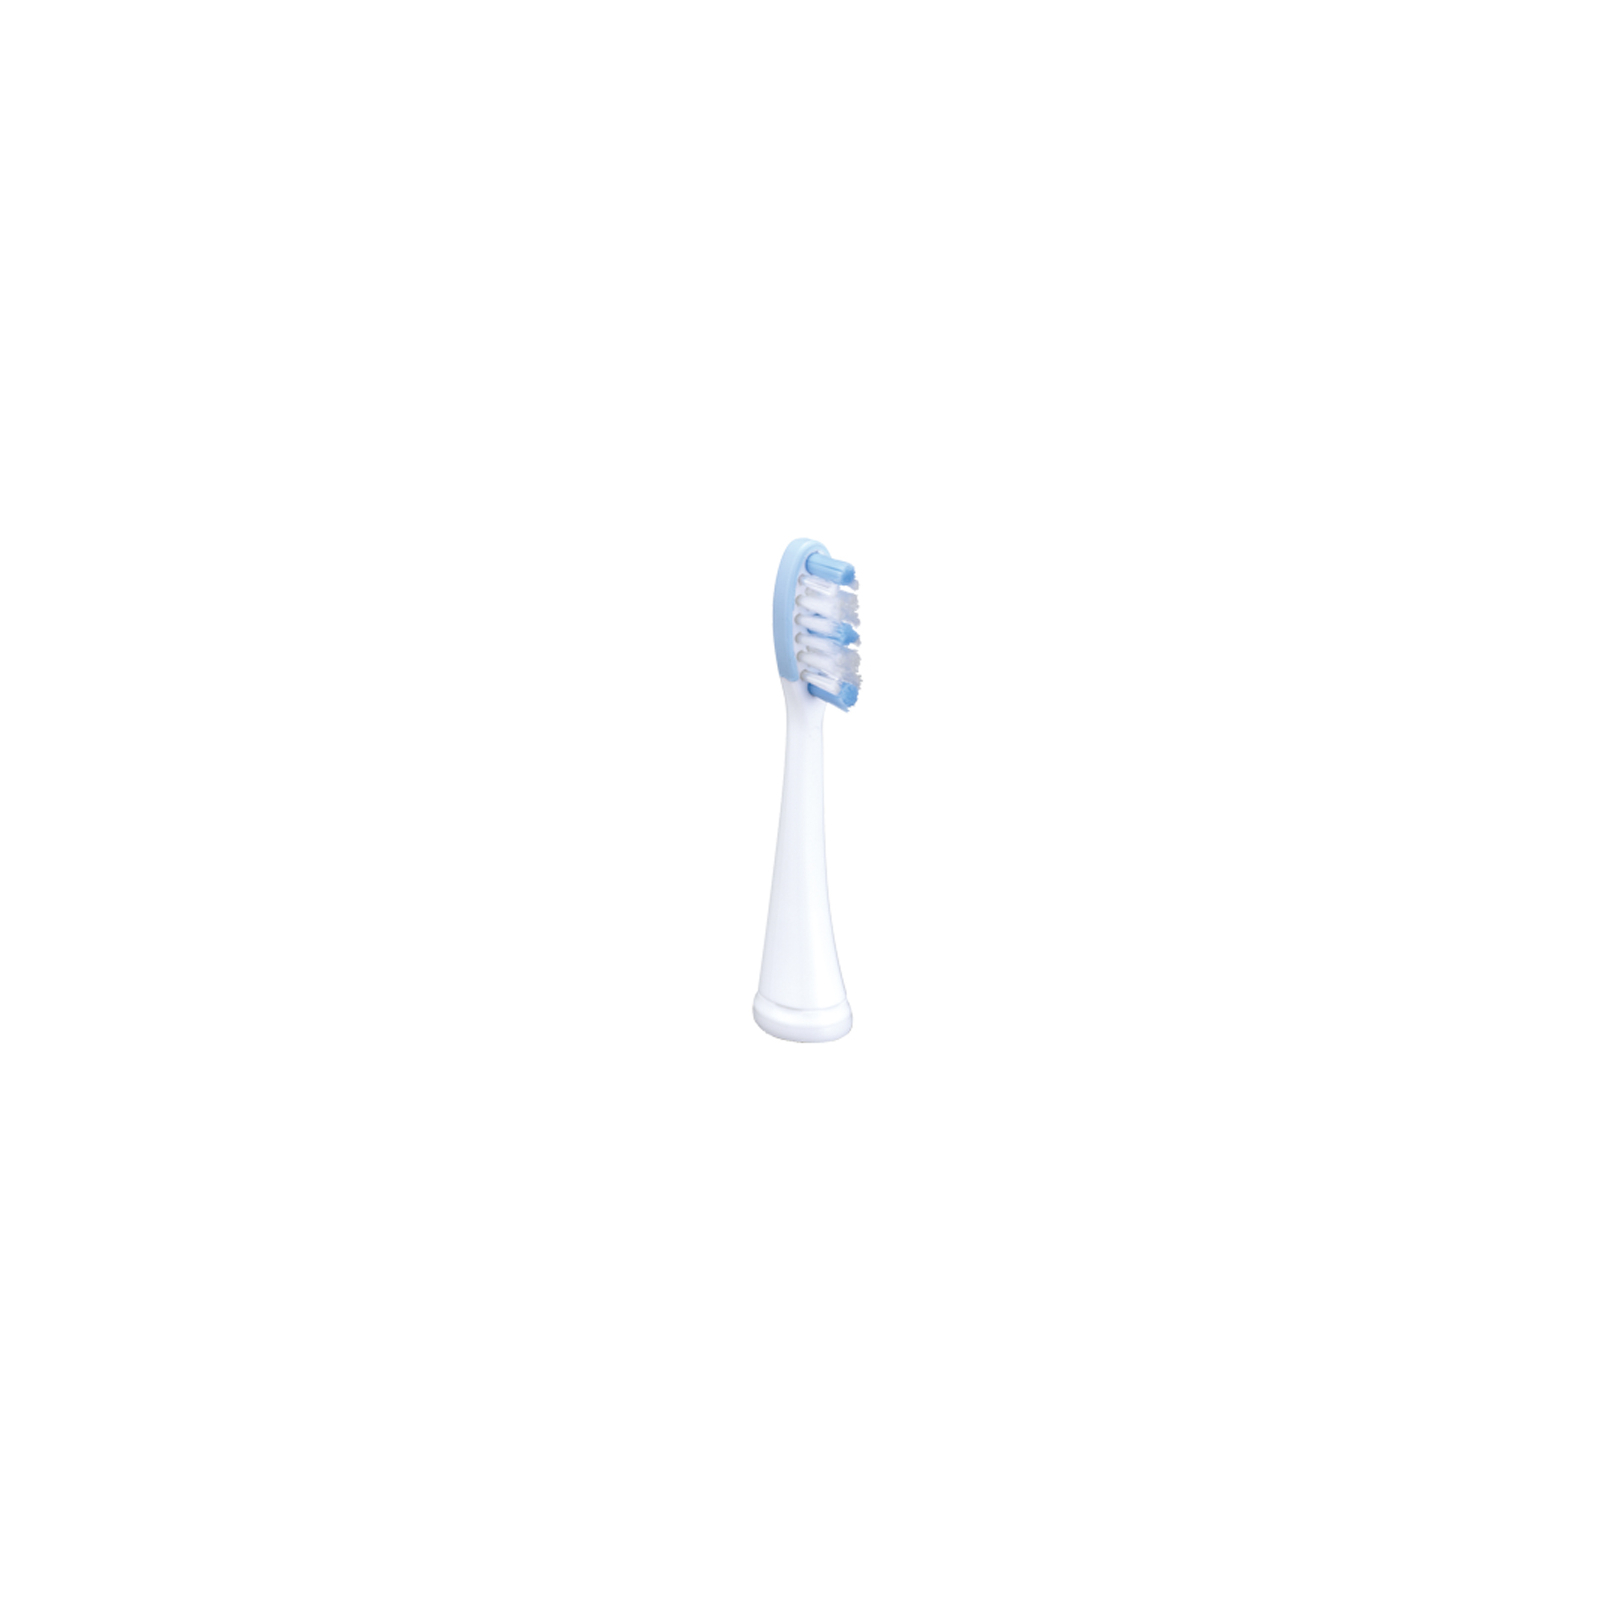 Електрична зубна щітка Panasonic EW-DL82-W820 зображення 3